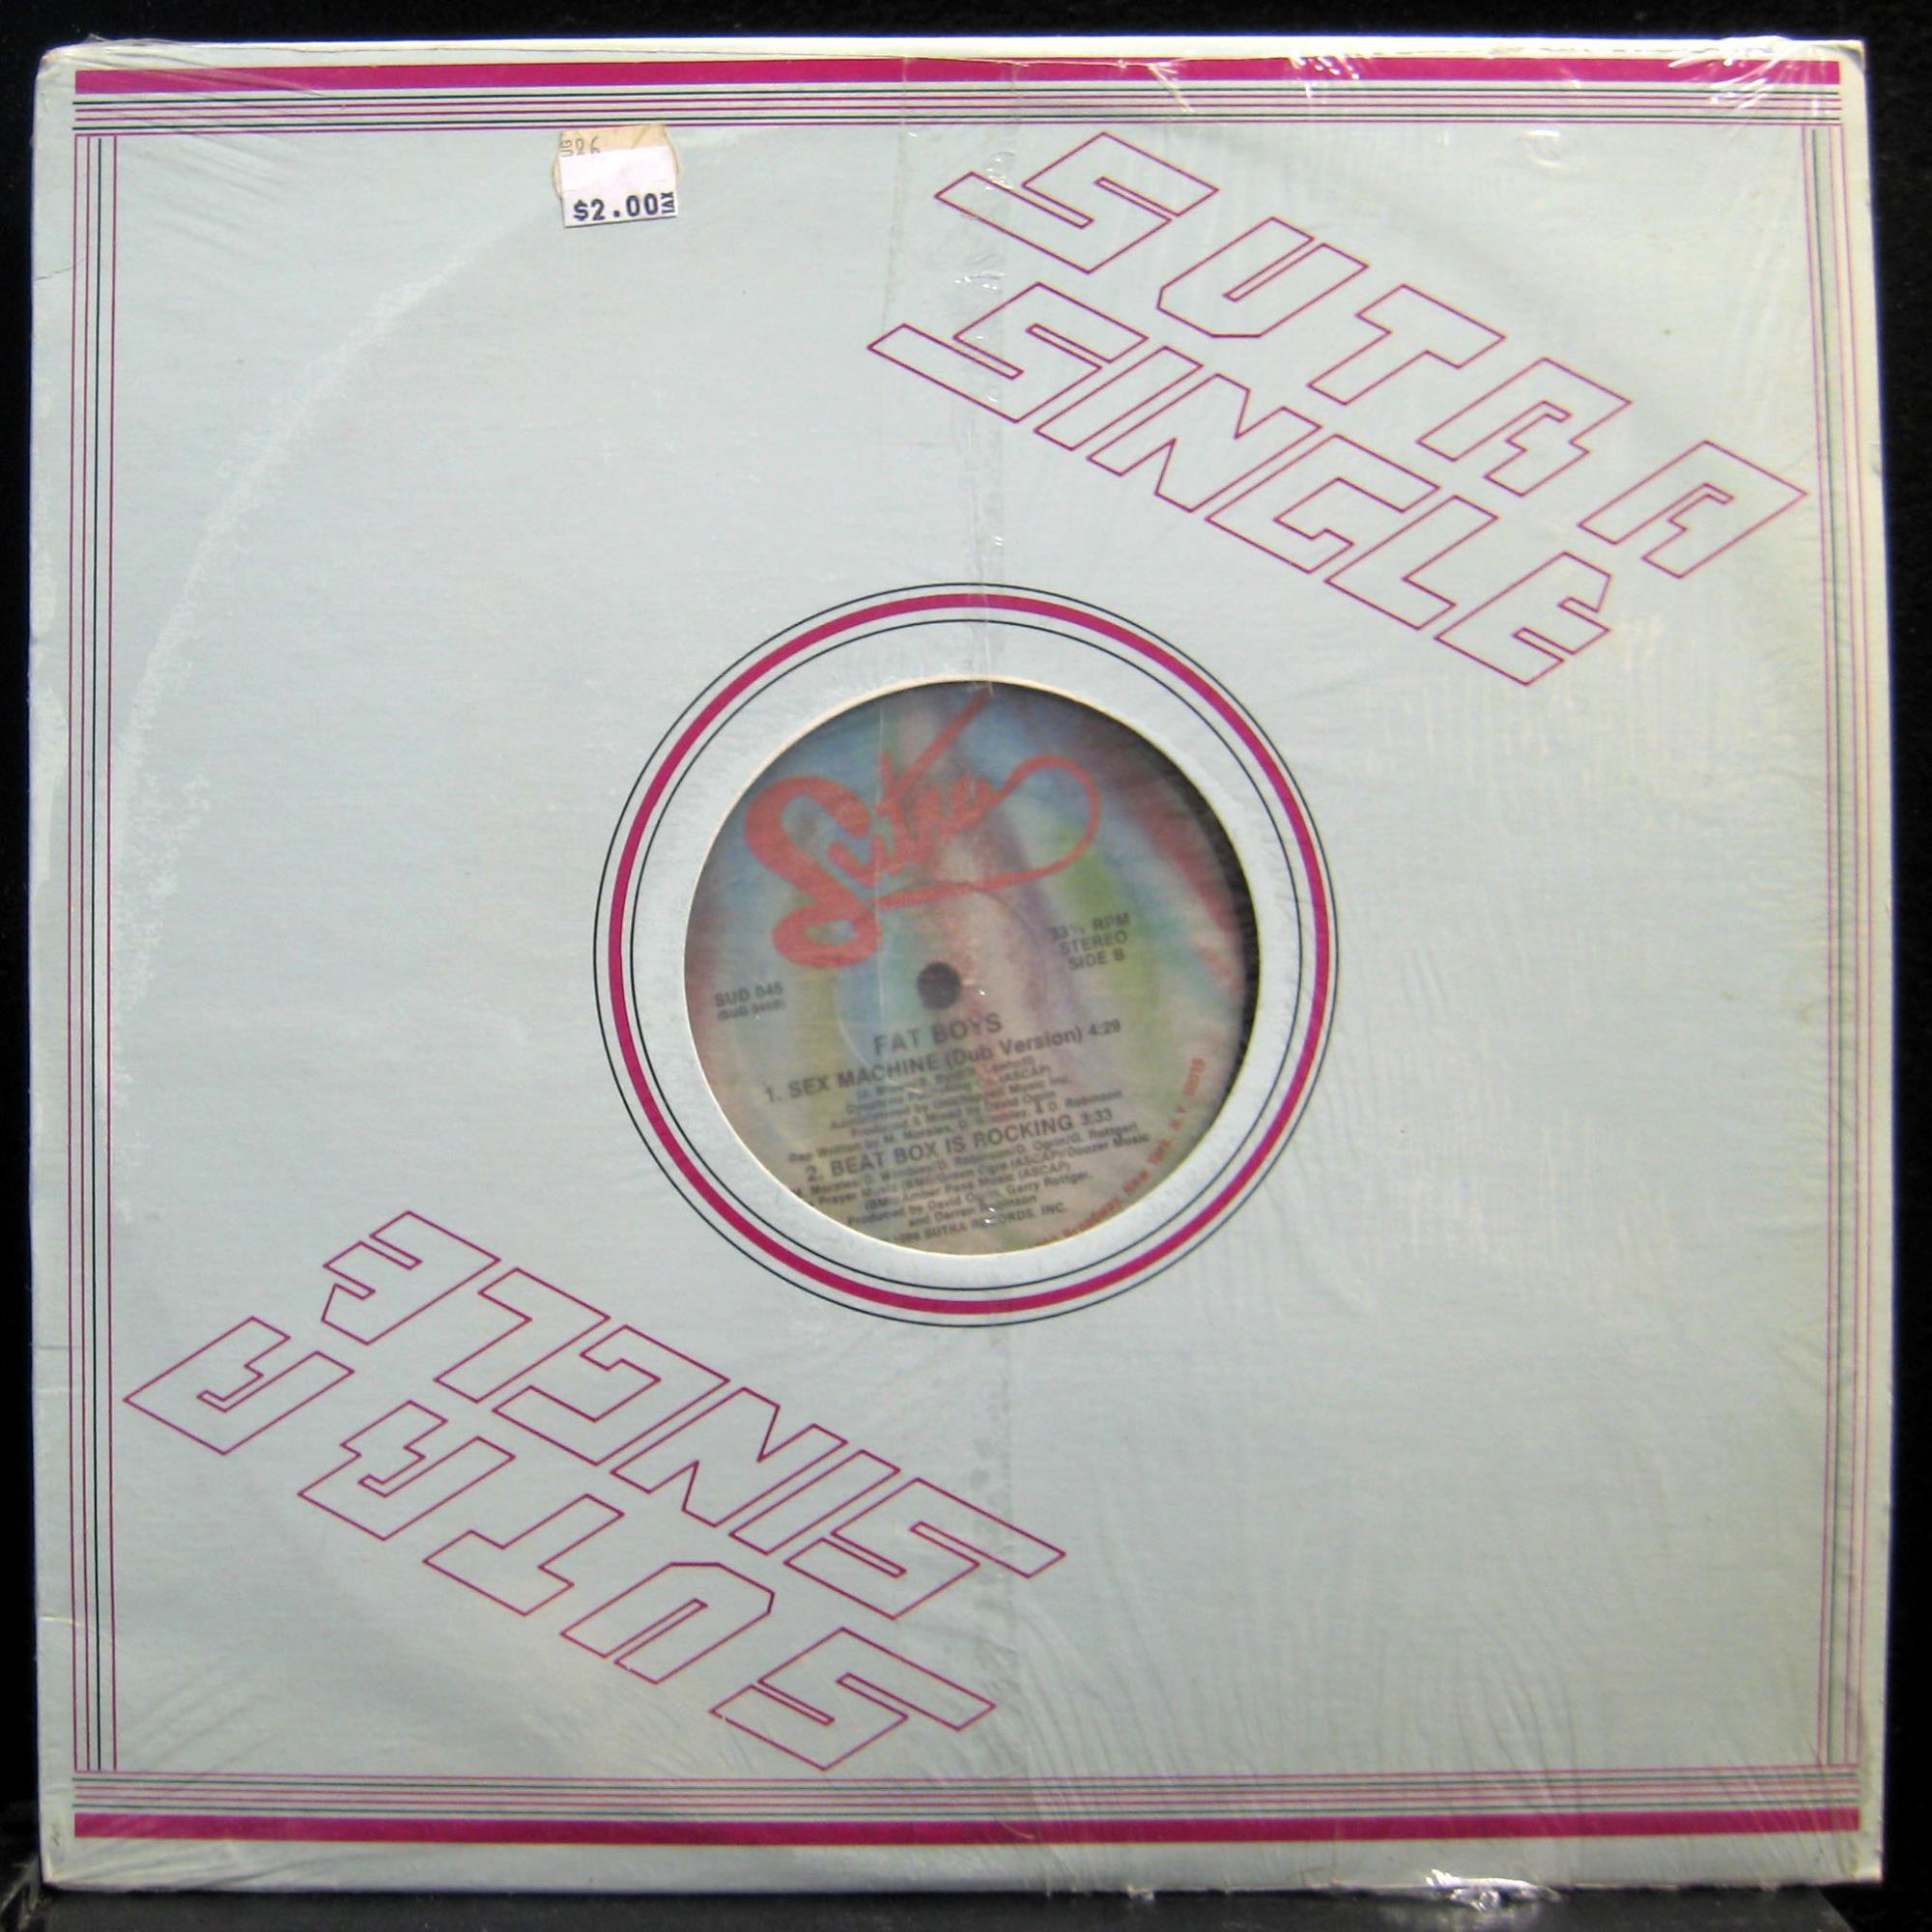 Fat Boys - Sex Machine / Beat Box Is Rocking 12" Mint- SUD 045 Vinyl 1986 Record